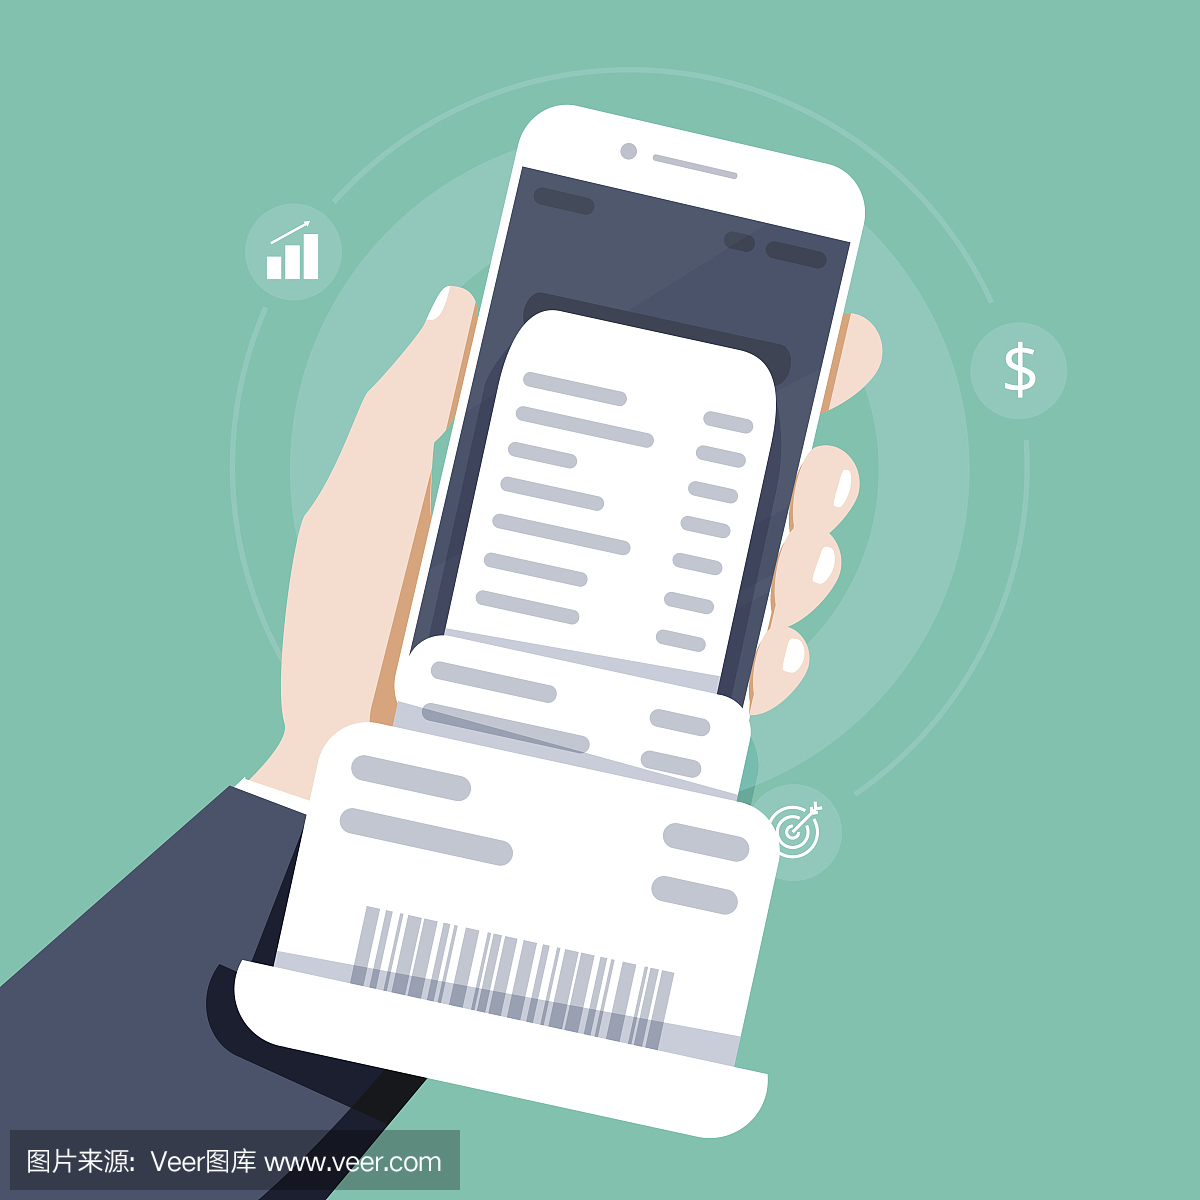 国家税务总局山西省税务局关于开展全面数字化的电子发票试点工作的公告